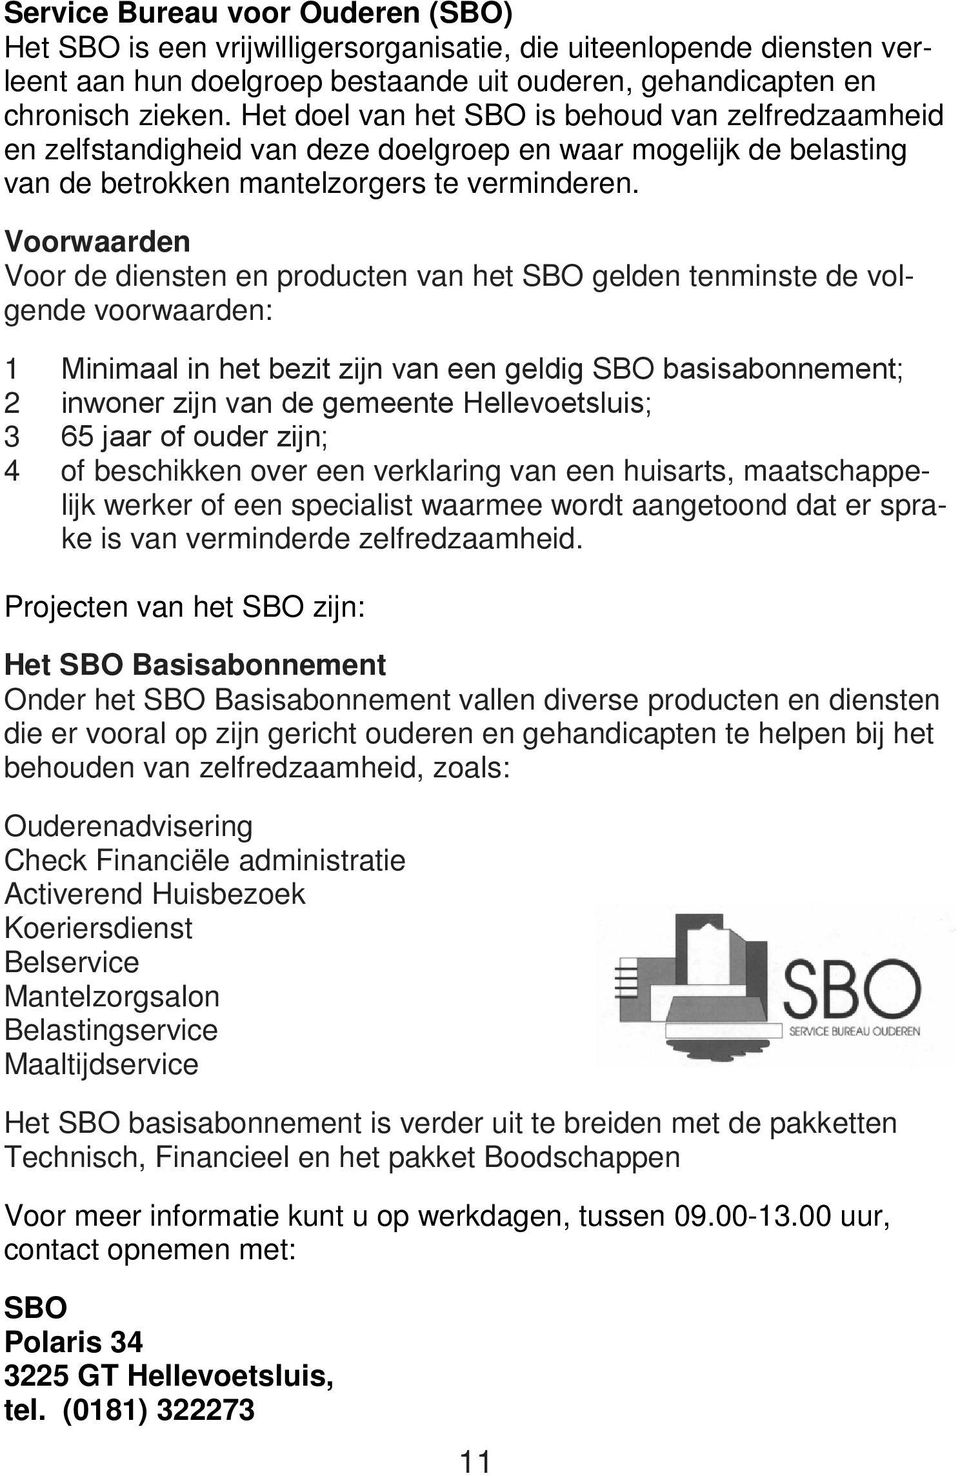 Voorwaarden Voor de diensten en producten van het SBO gelden tenminste de volgende voorwaarden: 1 Minimaal in het bezit zijn van een geldig SBO basisabonnement; 2 inwoner zijn van de gemeente